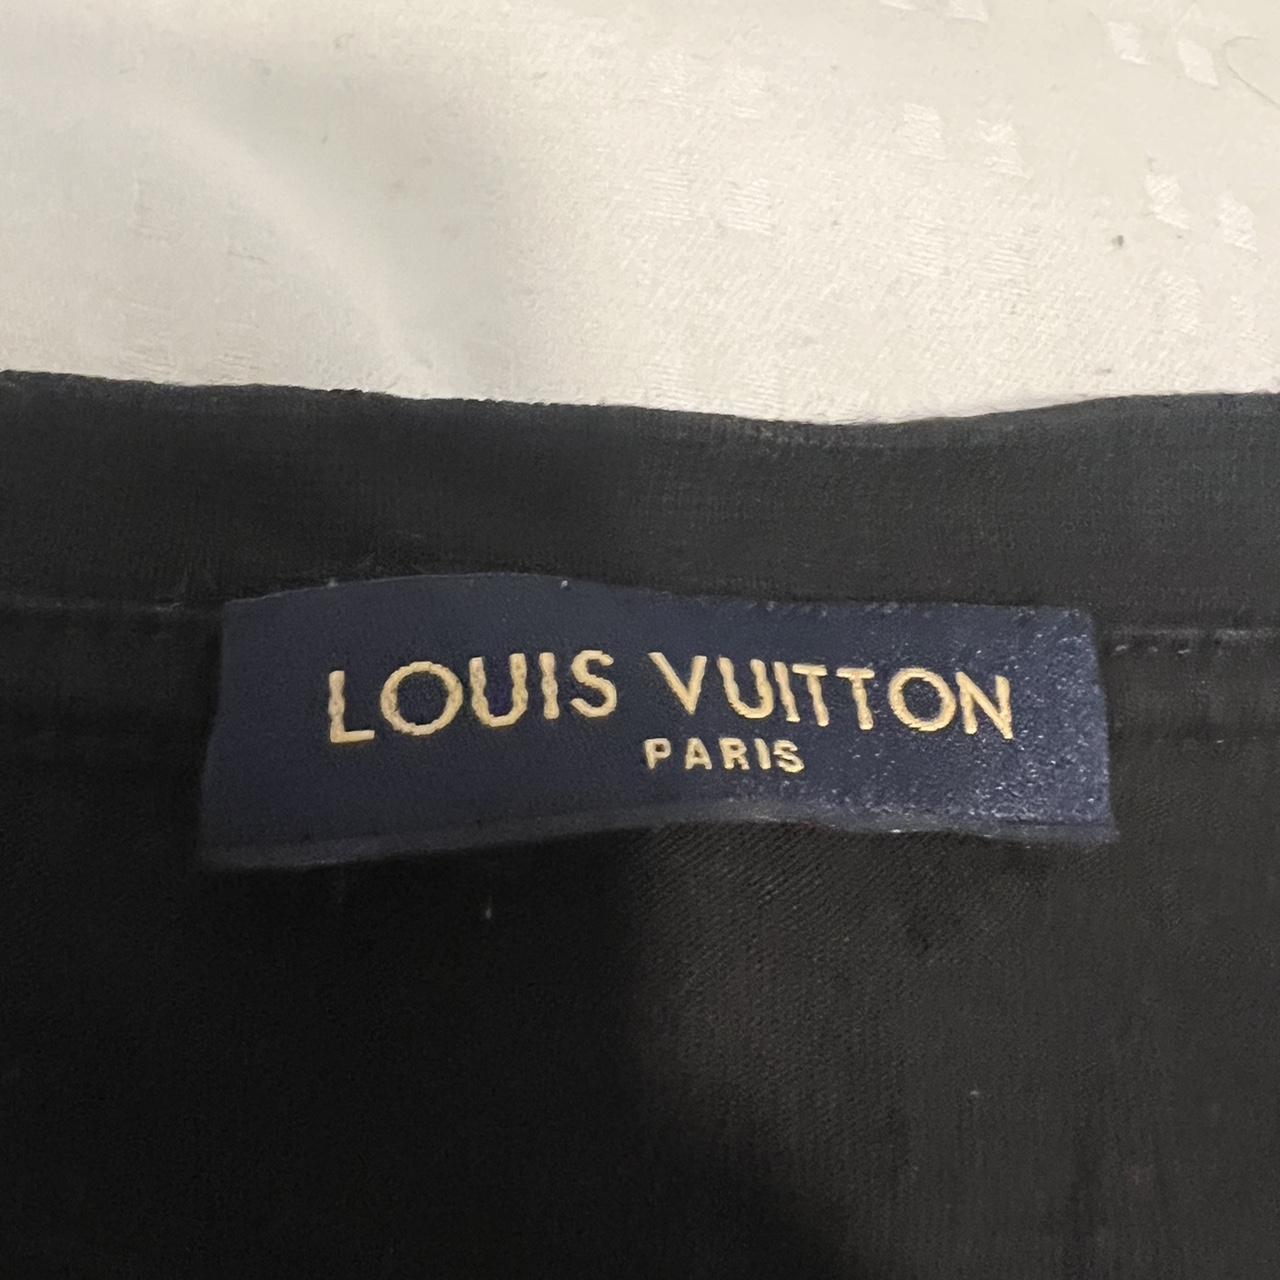 Louis Vuitton mens t shirt xl brand new never worn  - Depop